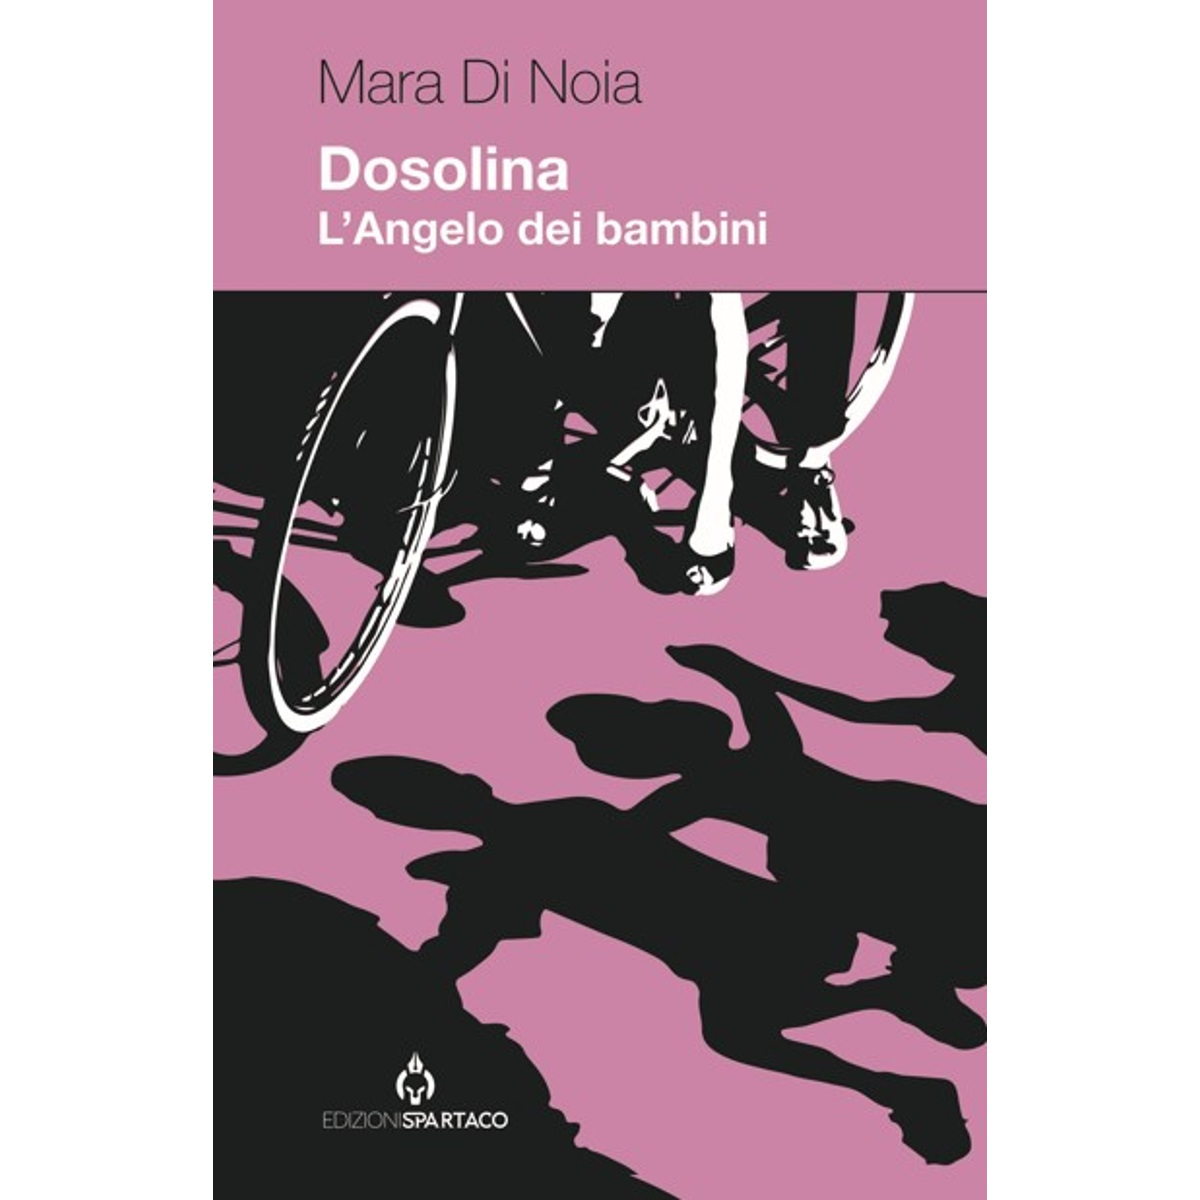 L'8 marzo esce Dosolina - L'Angelo Dei Bambini, il nuovo libro di Mara Di Noia, pubblicato da Edizioni Spartaco